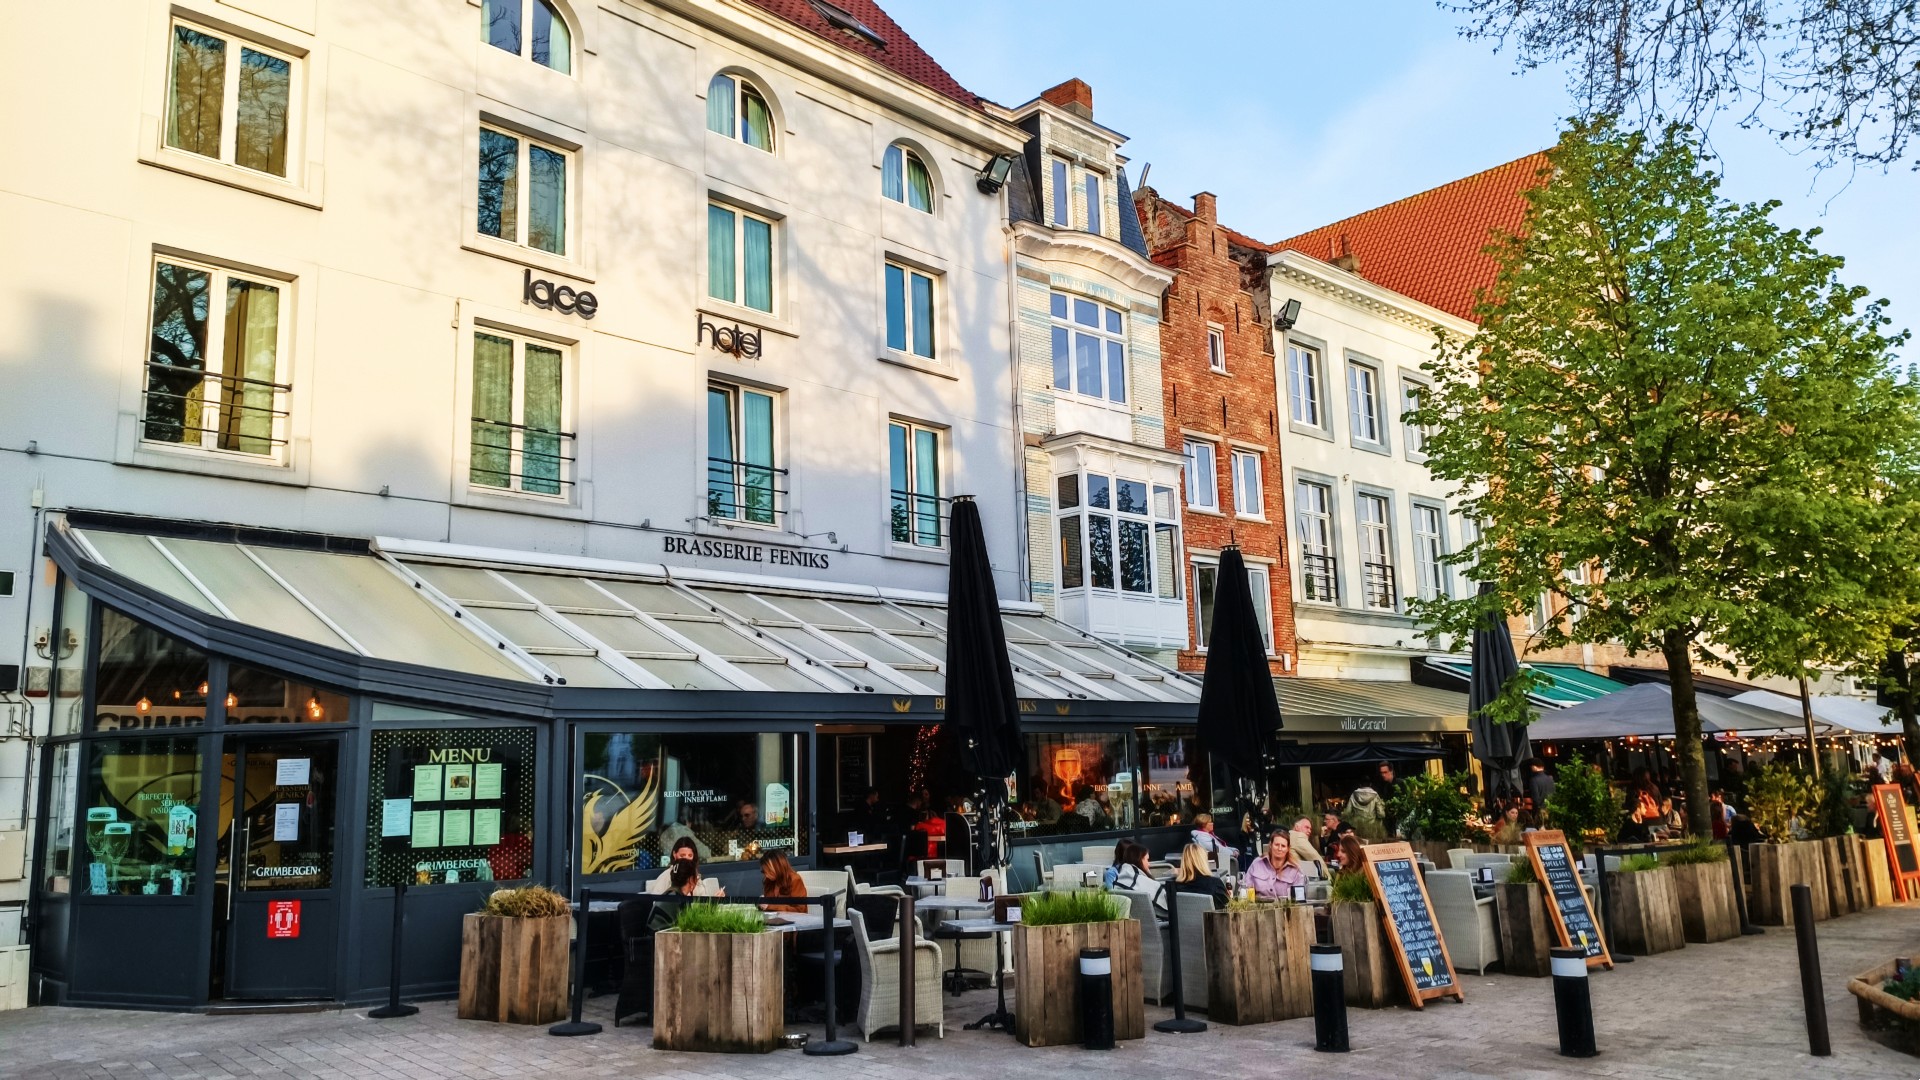 La plaza t'Zand es el lugar perfecto donde desayunar o tomar una cerveza en una terraza en Brujas